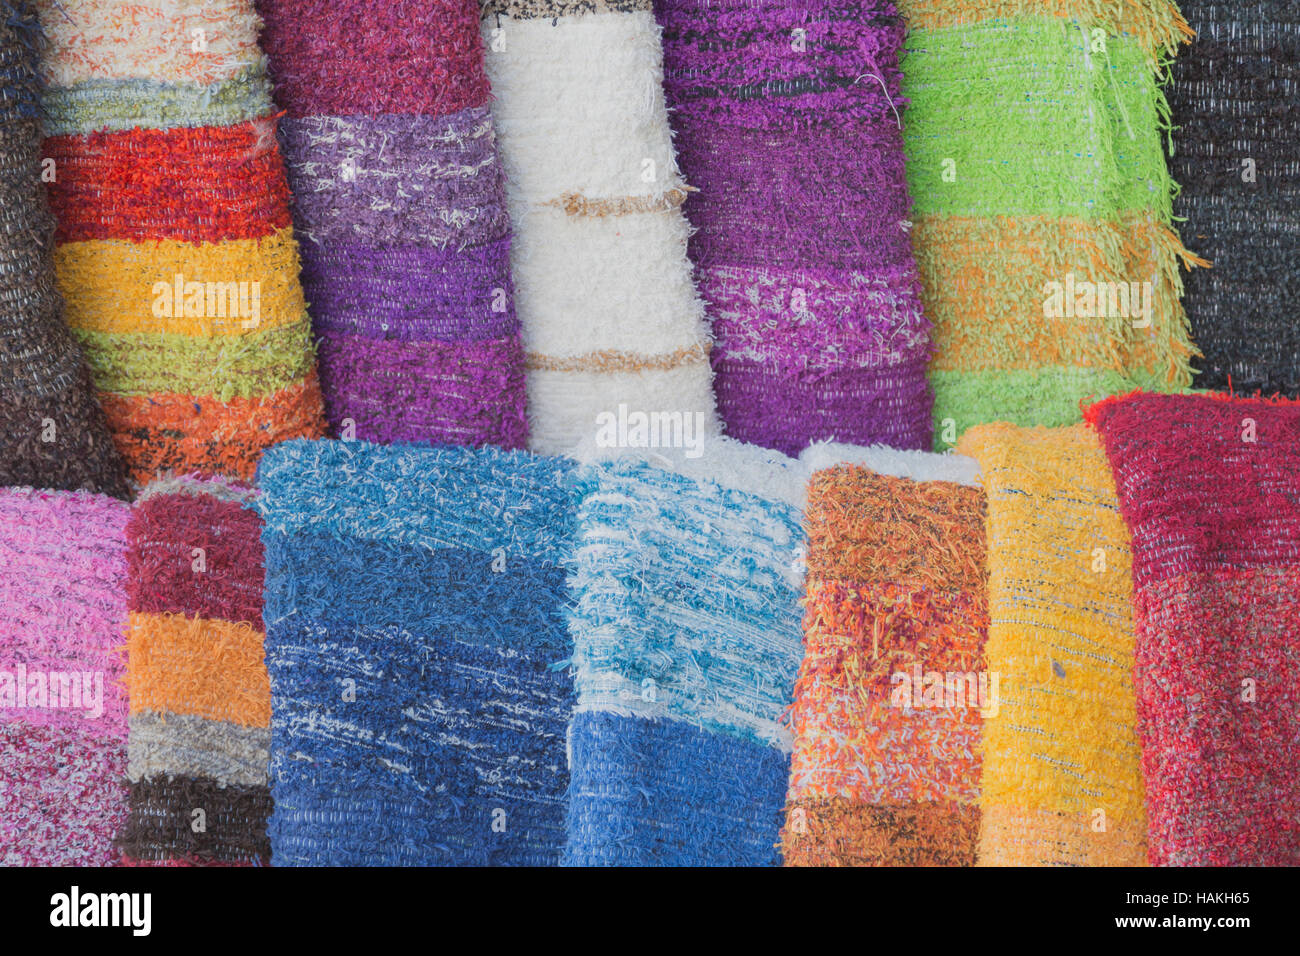 Frisch gefärbten Stränge Wolle hängen in der Sonne trocknen Stockfotografie  - Alamy